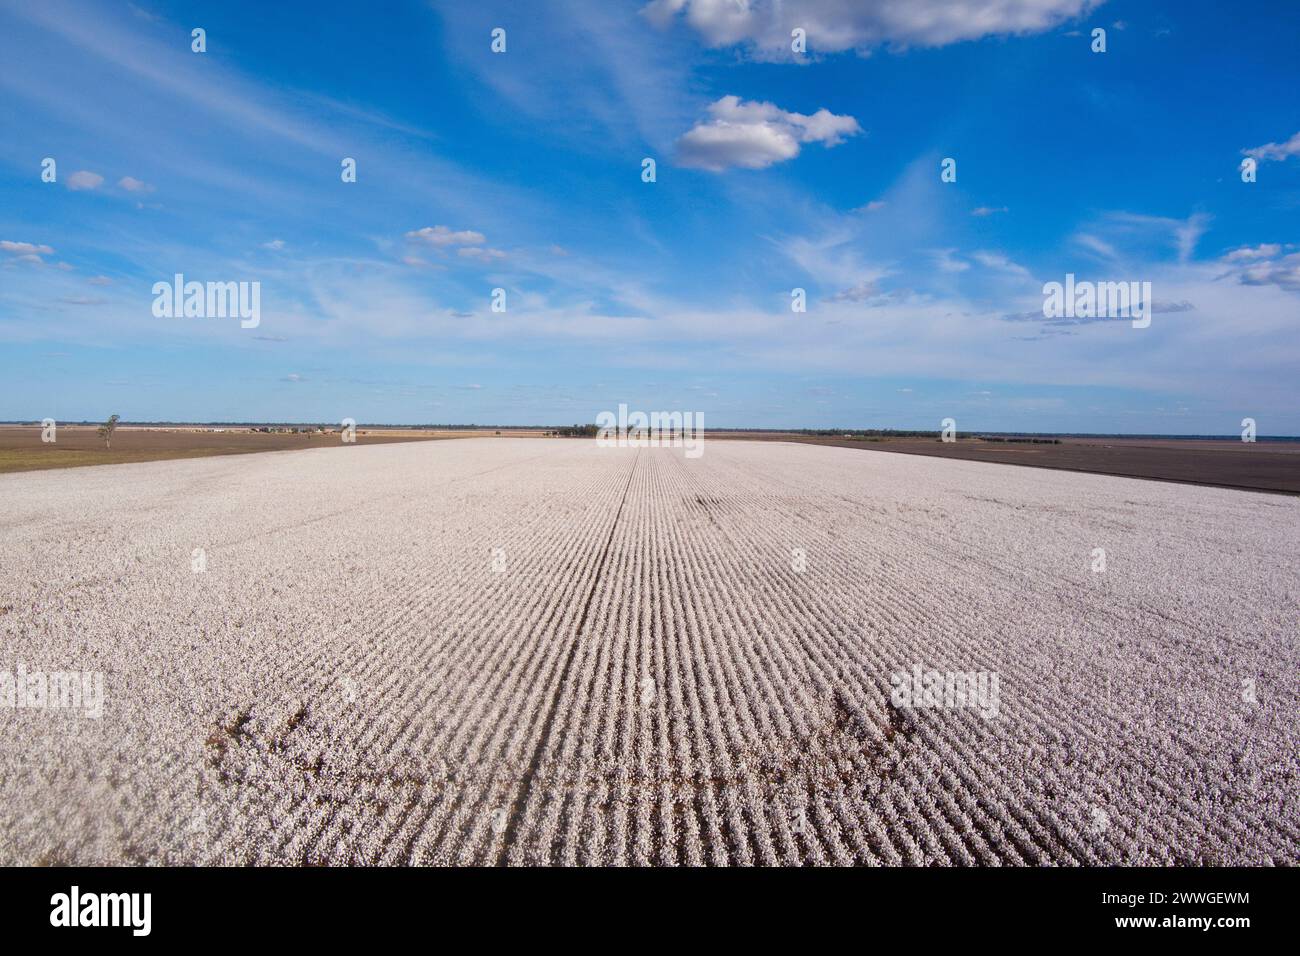 Aérien de champs de coton sur le point d'être récoltés près de Dalby Queensland Australie Banque D'Images